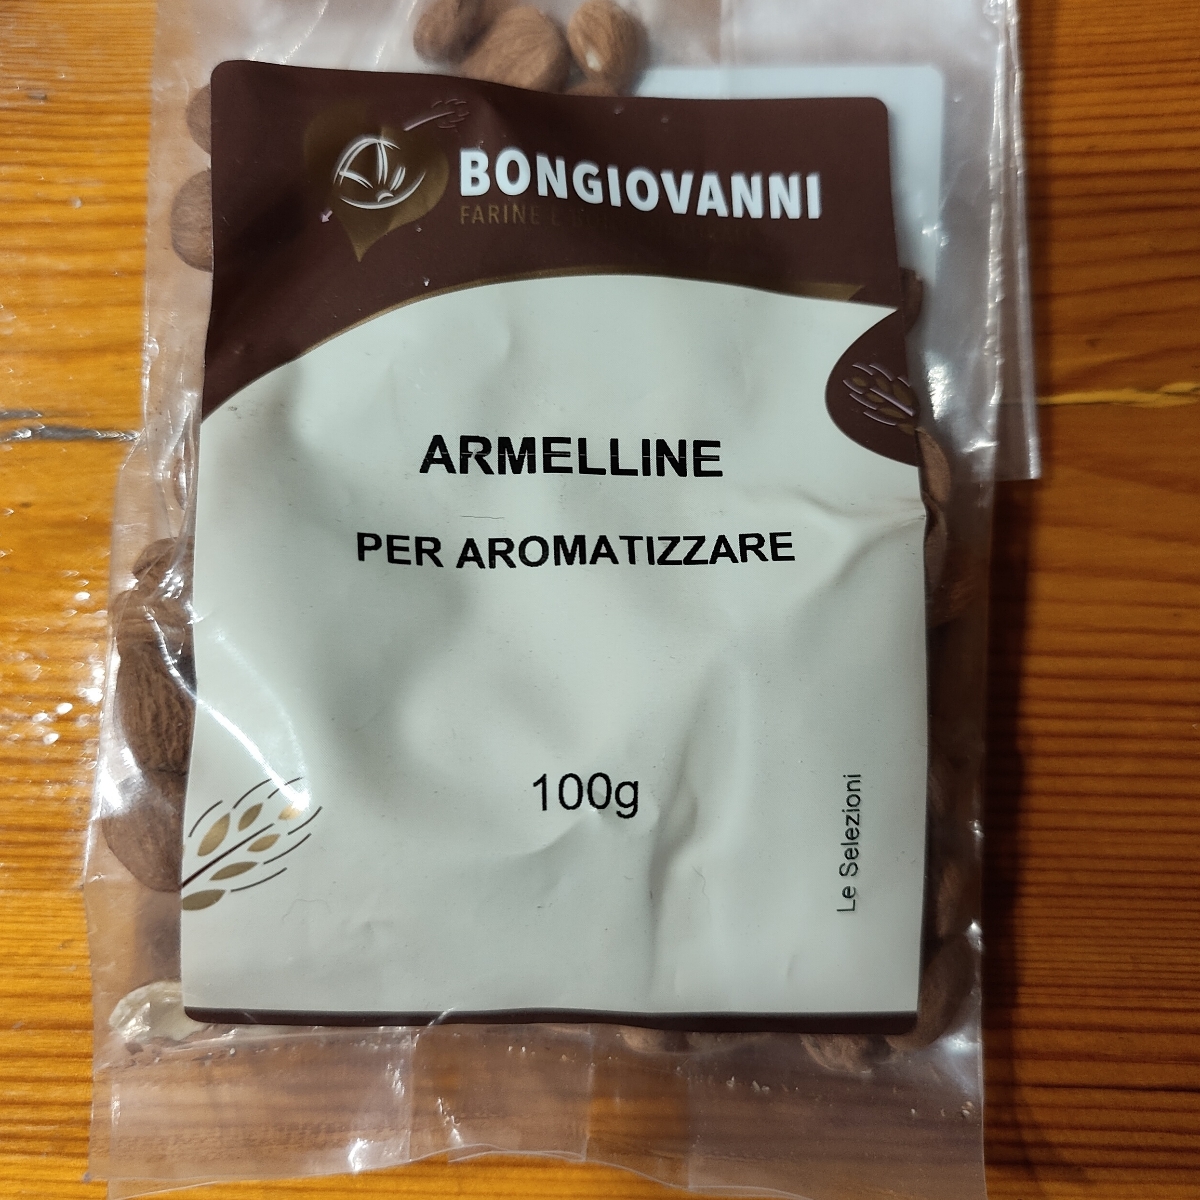 Bongiovanni Armelline per aromatizzare Reviews | abillion